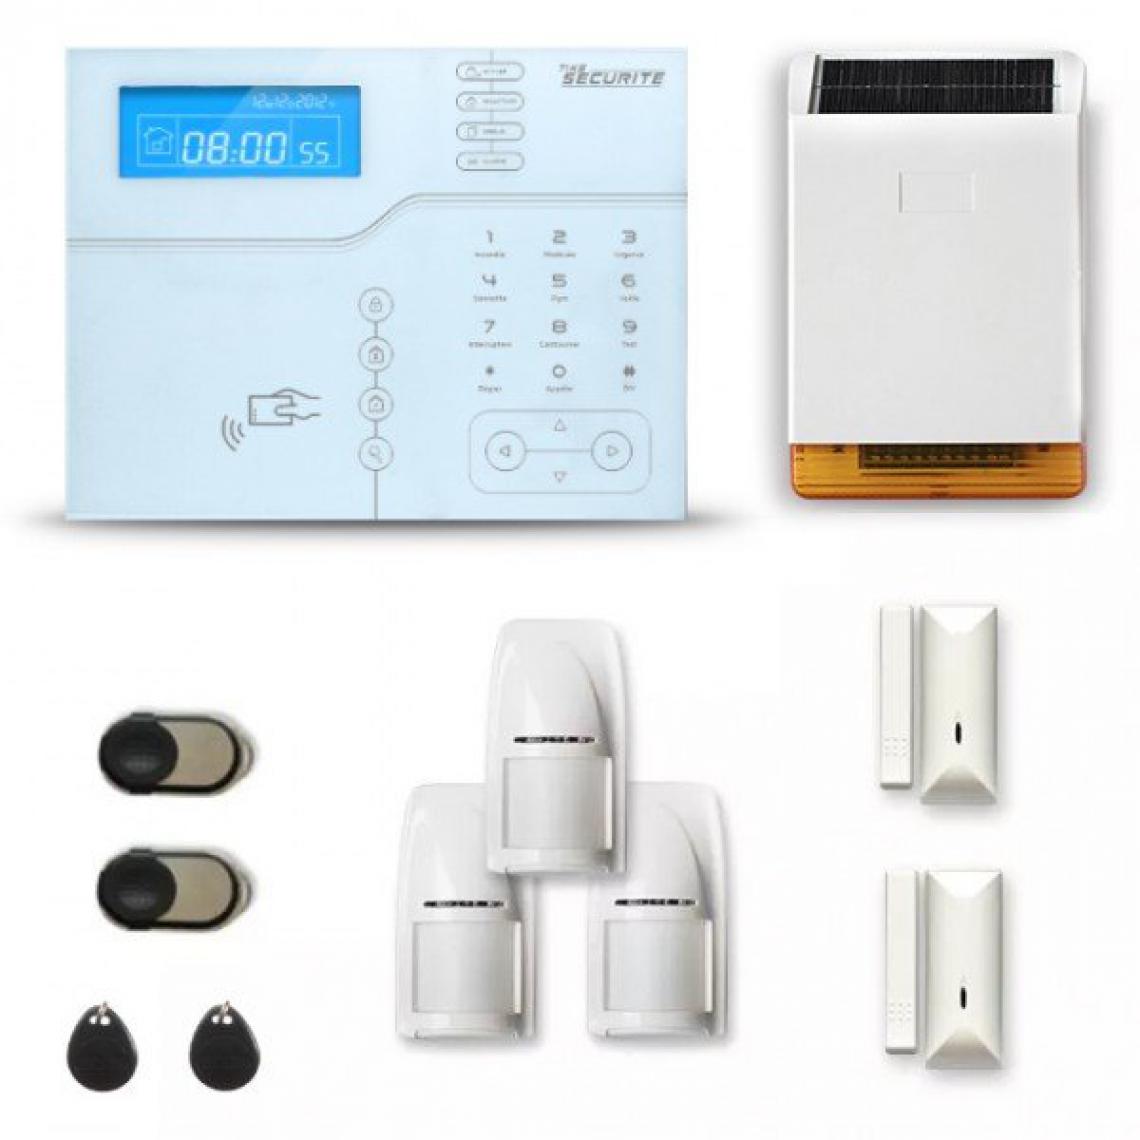 Tike Securite - Alarme maison sans fil SHB45 GSM/IP avec option GSM incluse - Alarme connectée